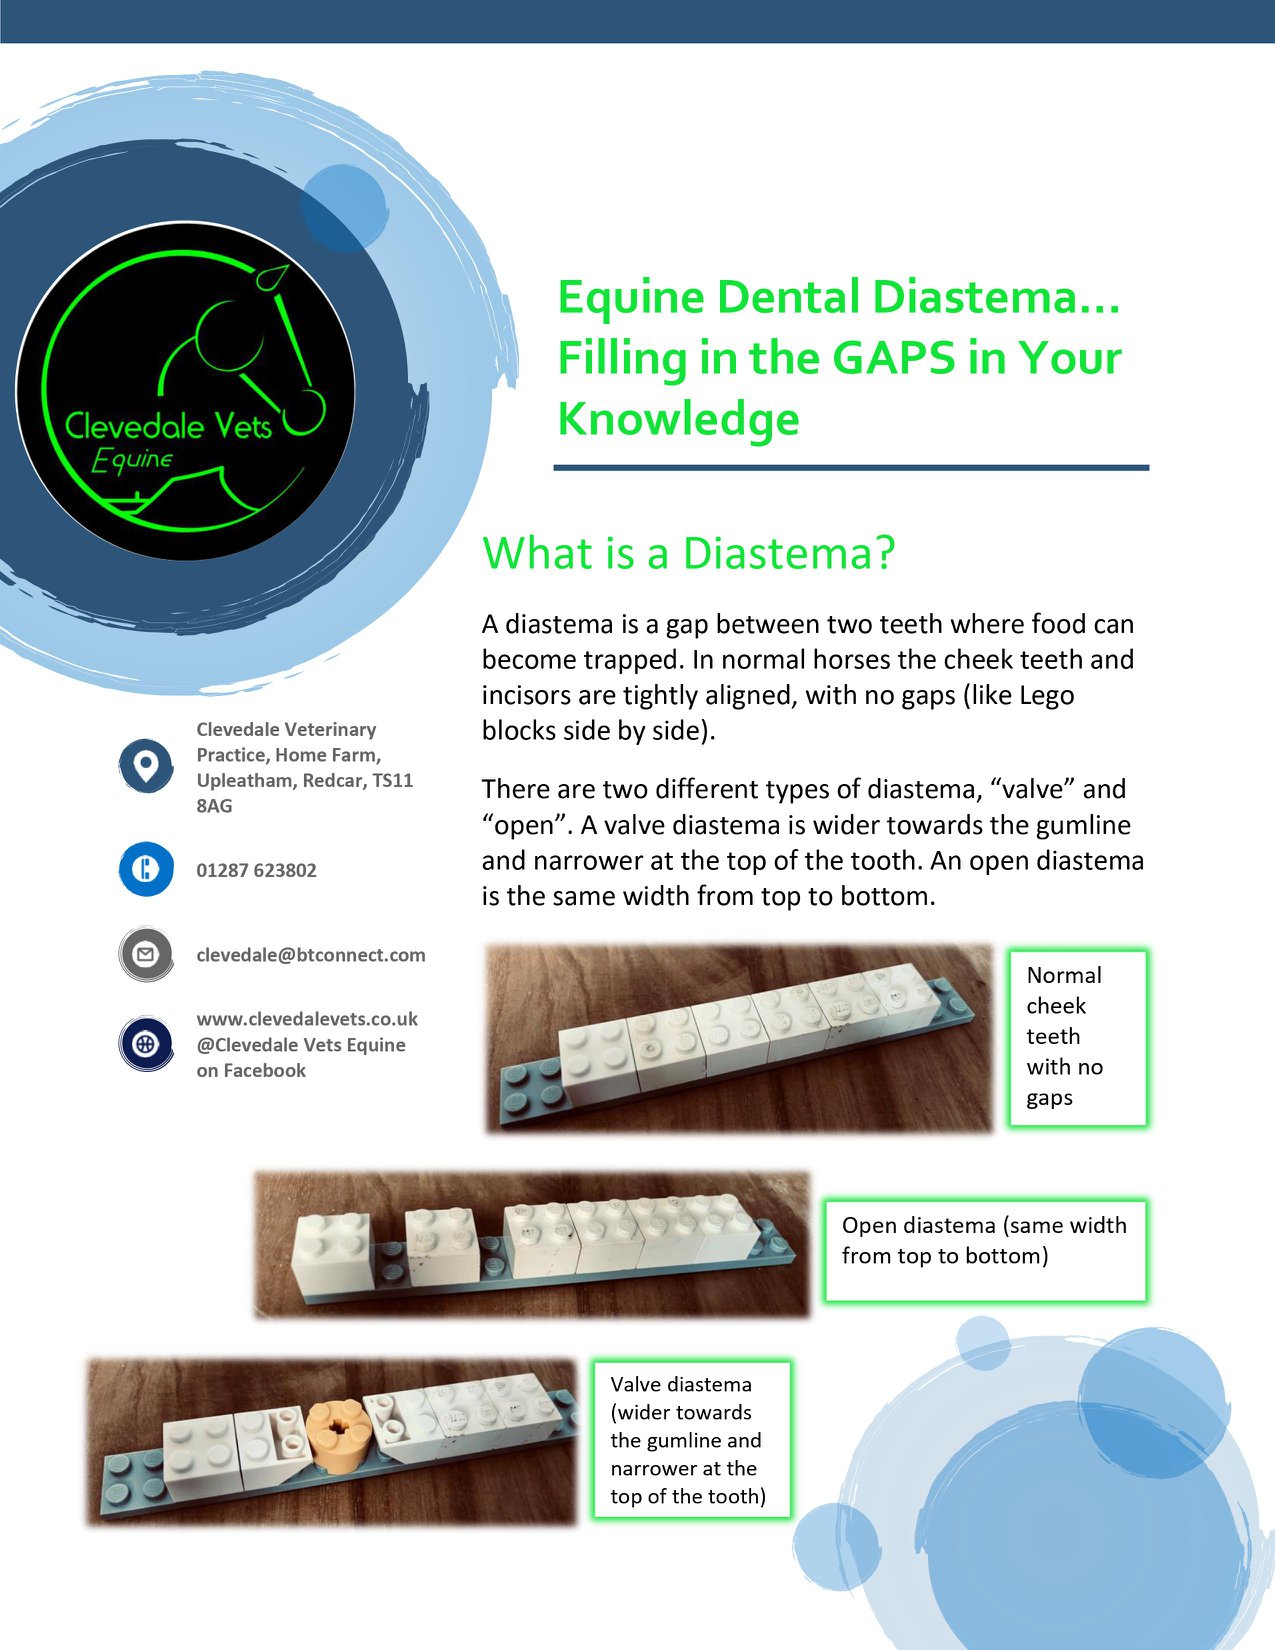 Equine Dental Diastema 3